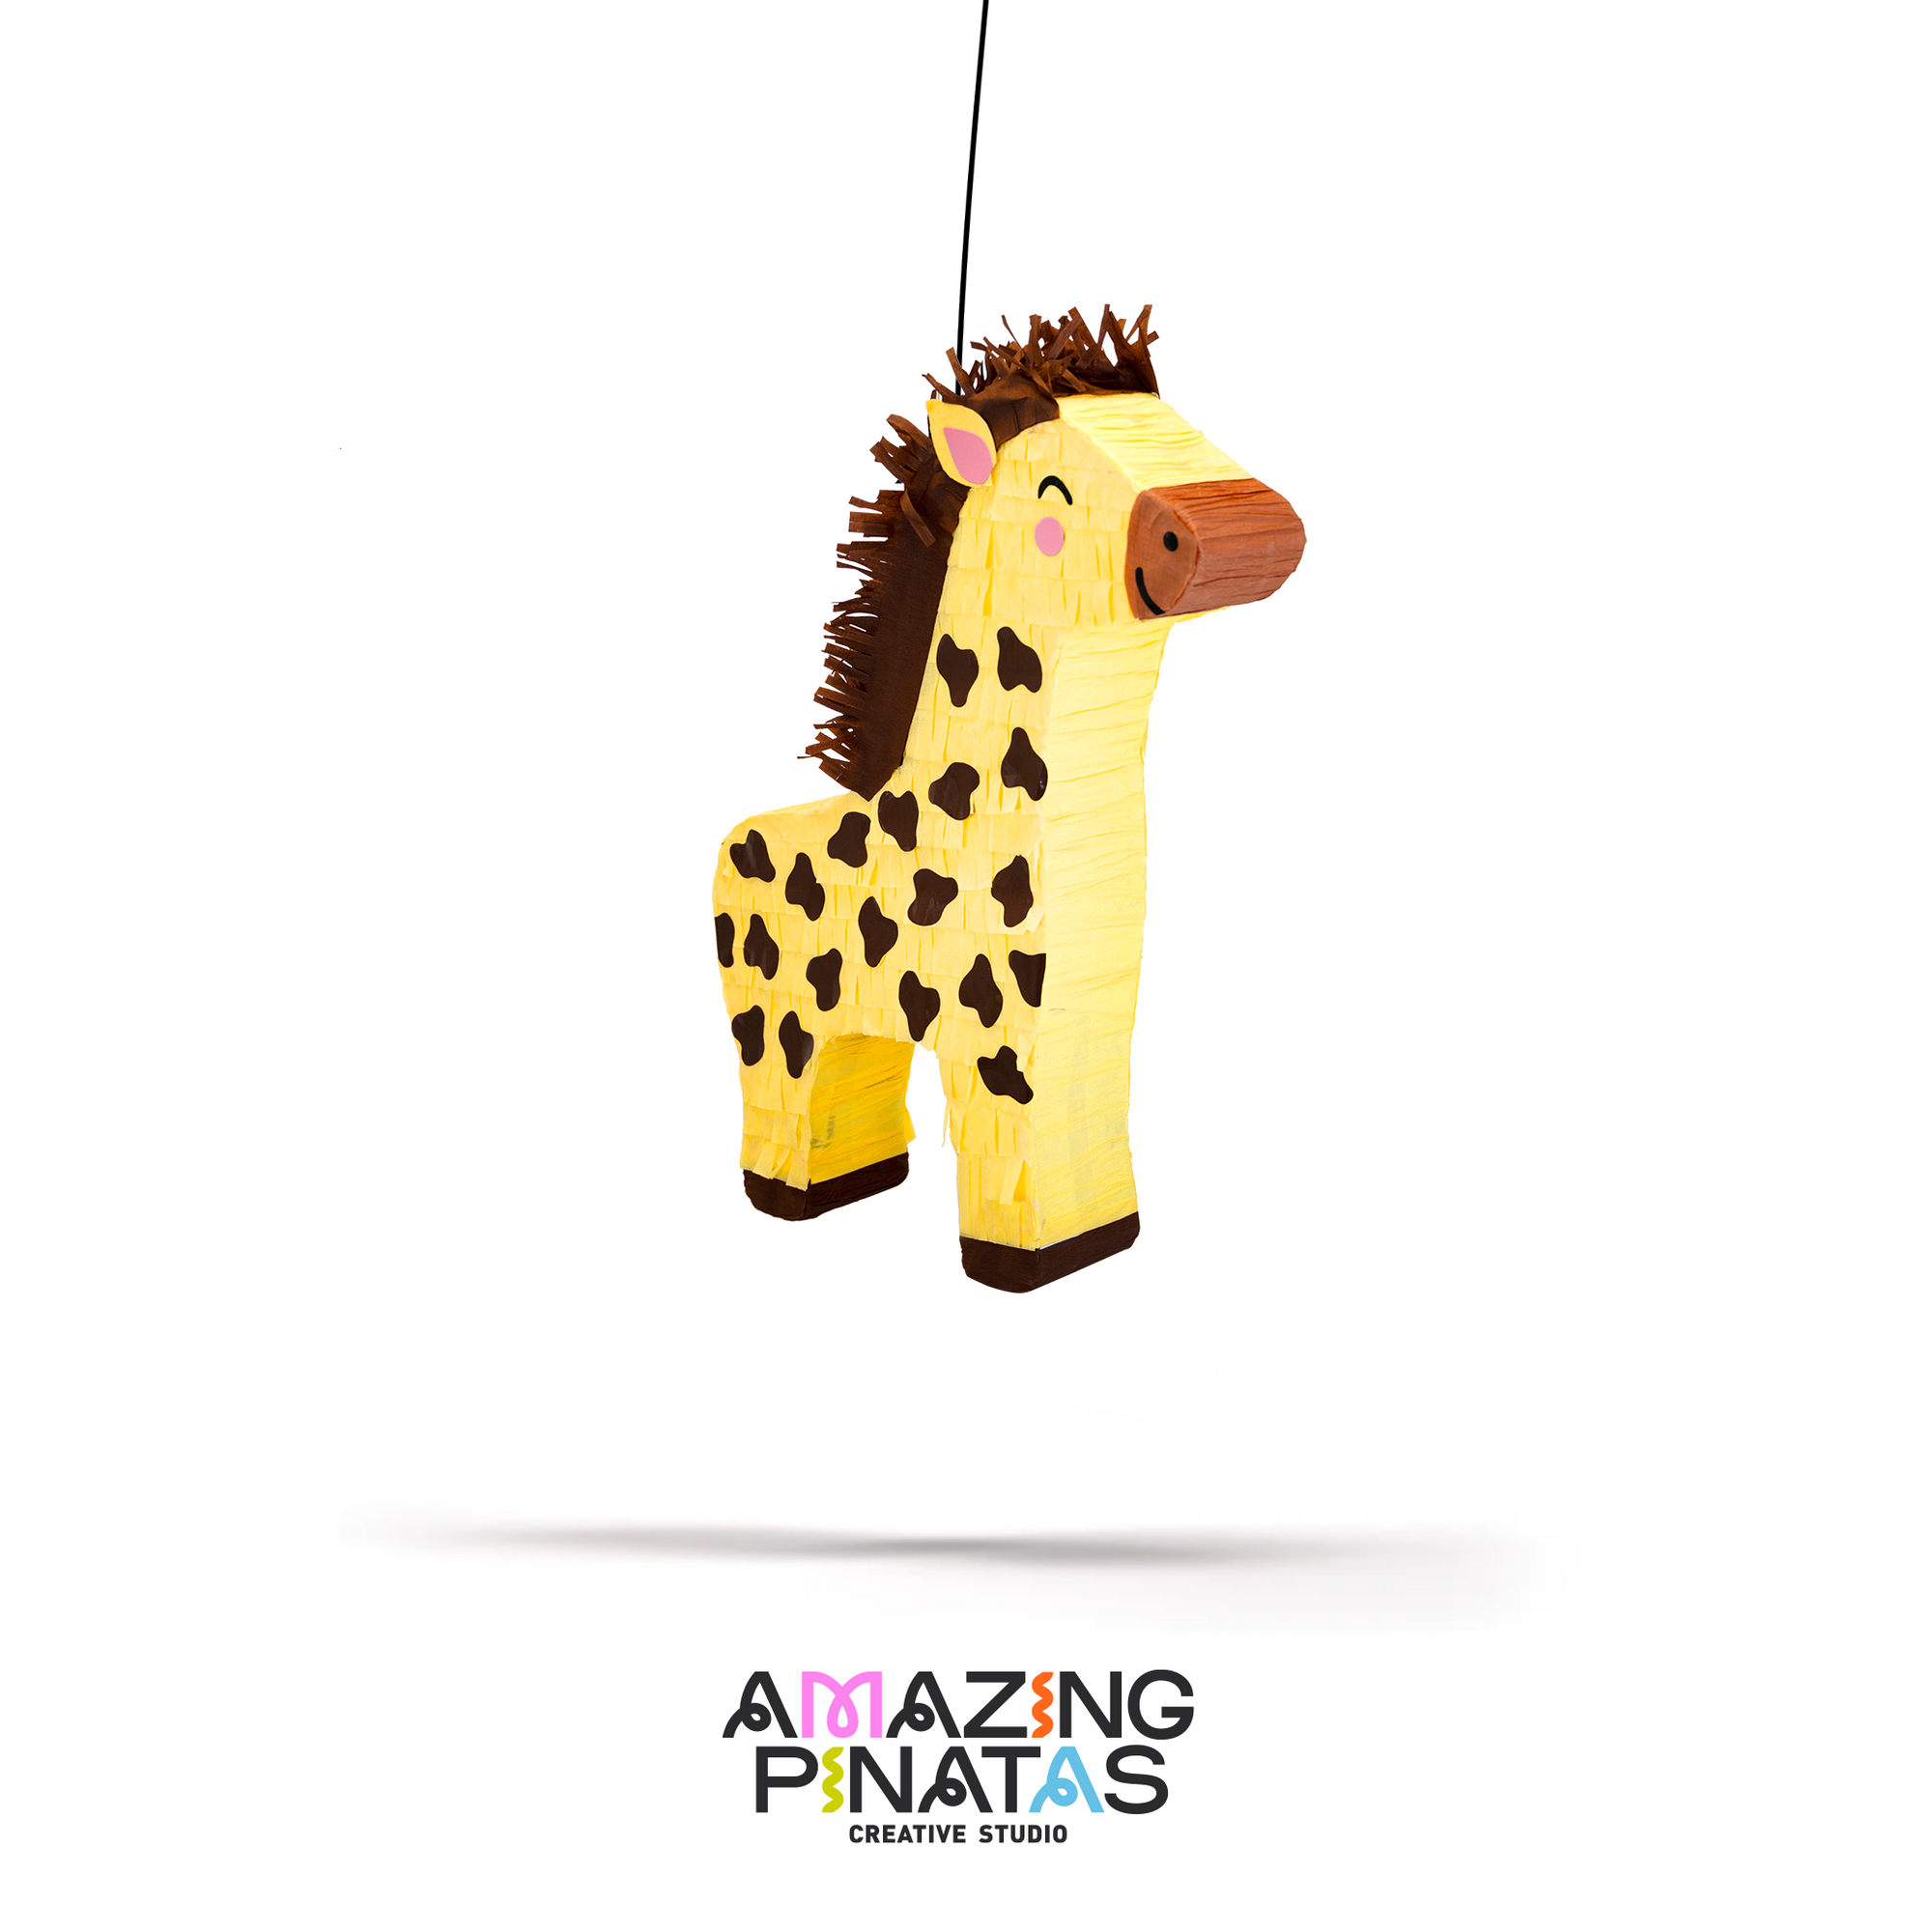 Giraffe Pinata | Amazing Pinatas 